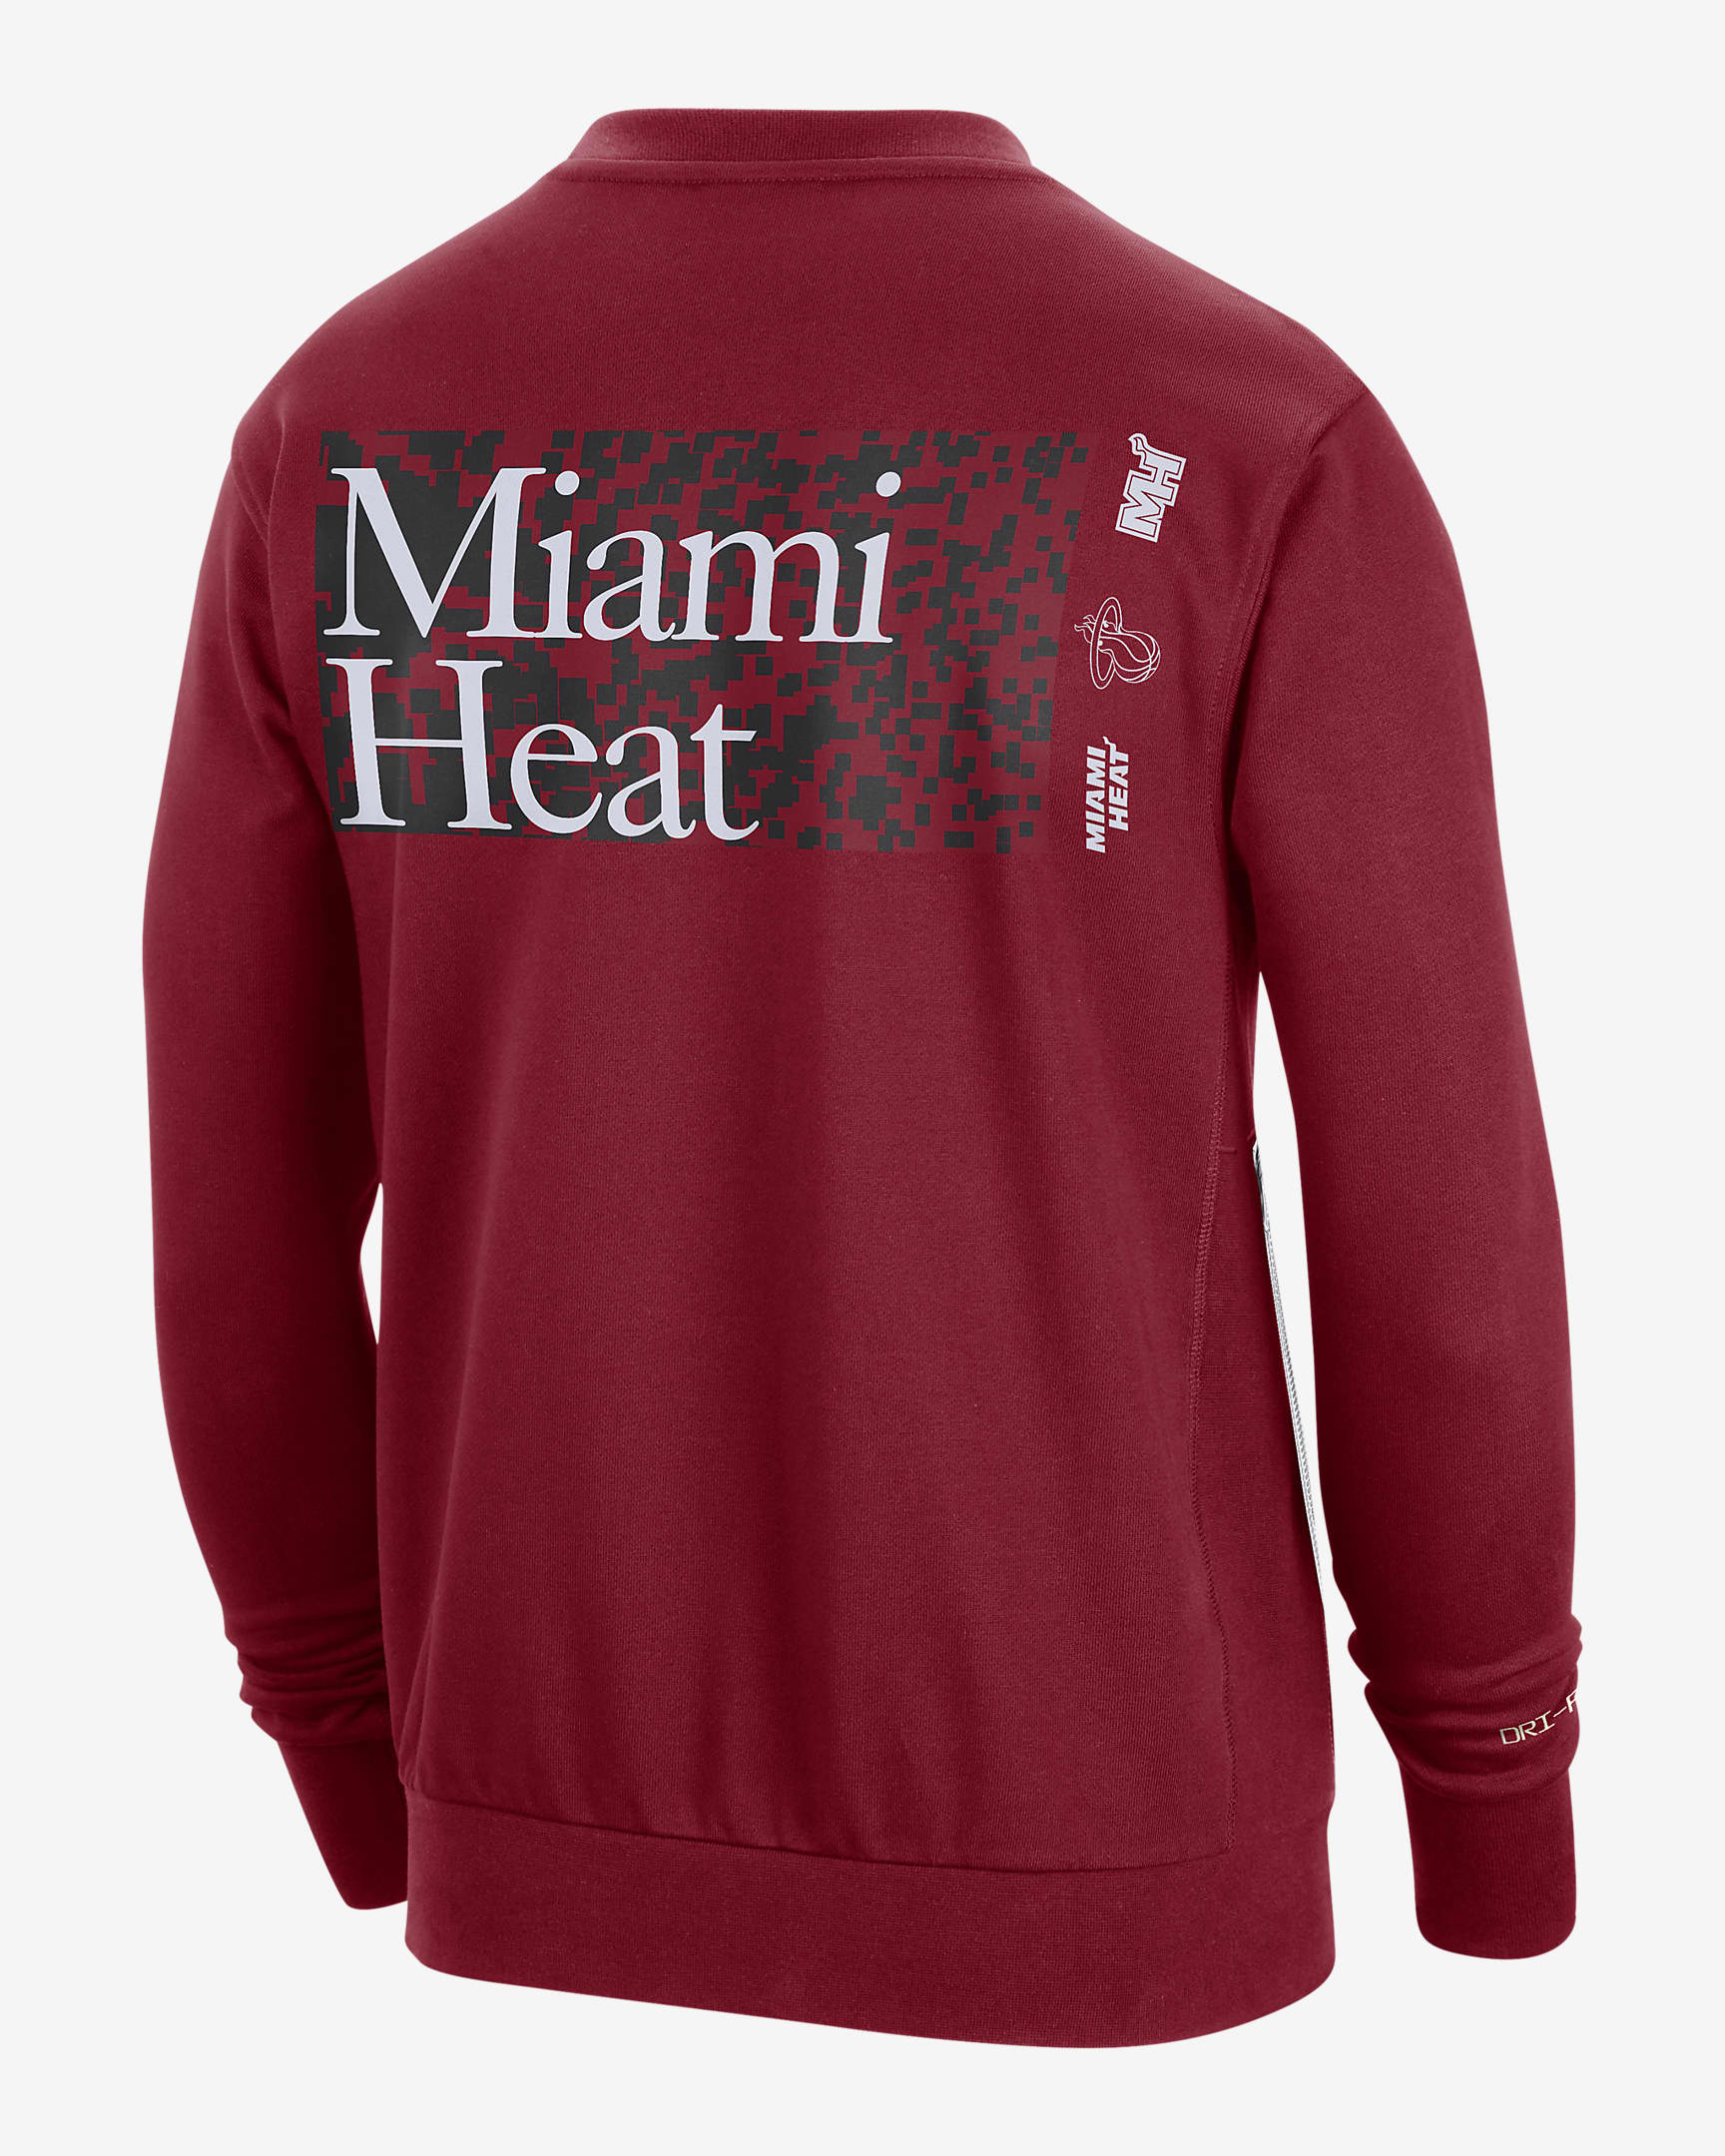 Miami Heat Standard Issue Men's Nike Dri-FIT NBA Crew-Neck Sweatshirt ...